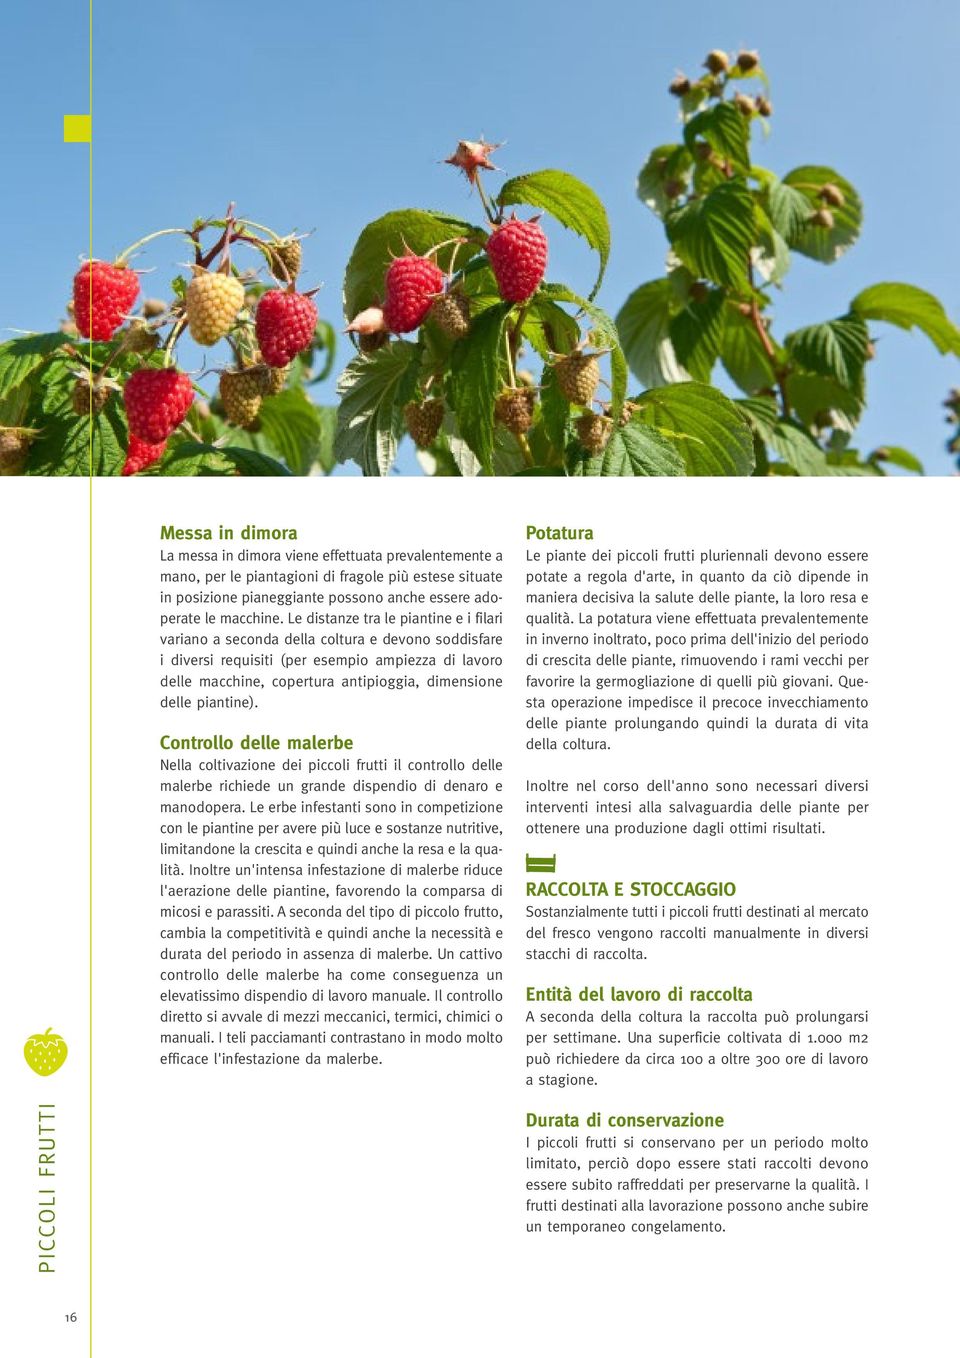 piantine). Controllo delle malerbe Nella coltivazione dei piccoli frutti il controllo delle malerbe richiede un grande dispendio di denaro e manodopera.